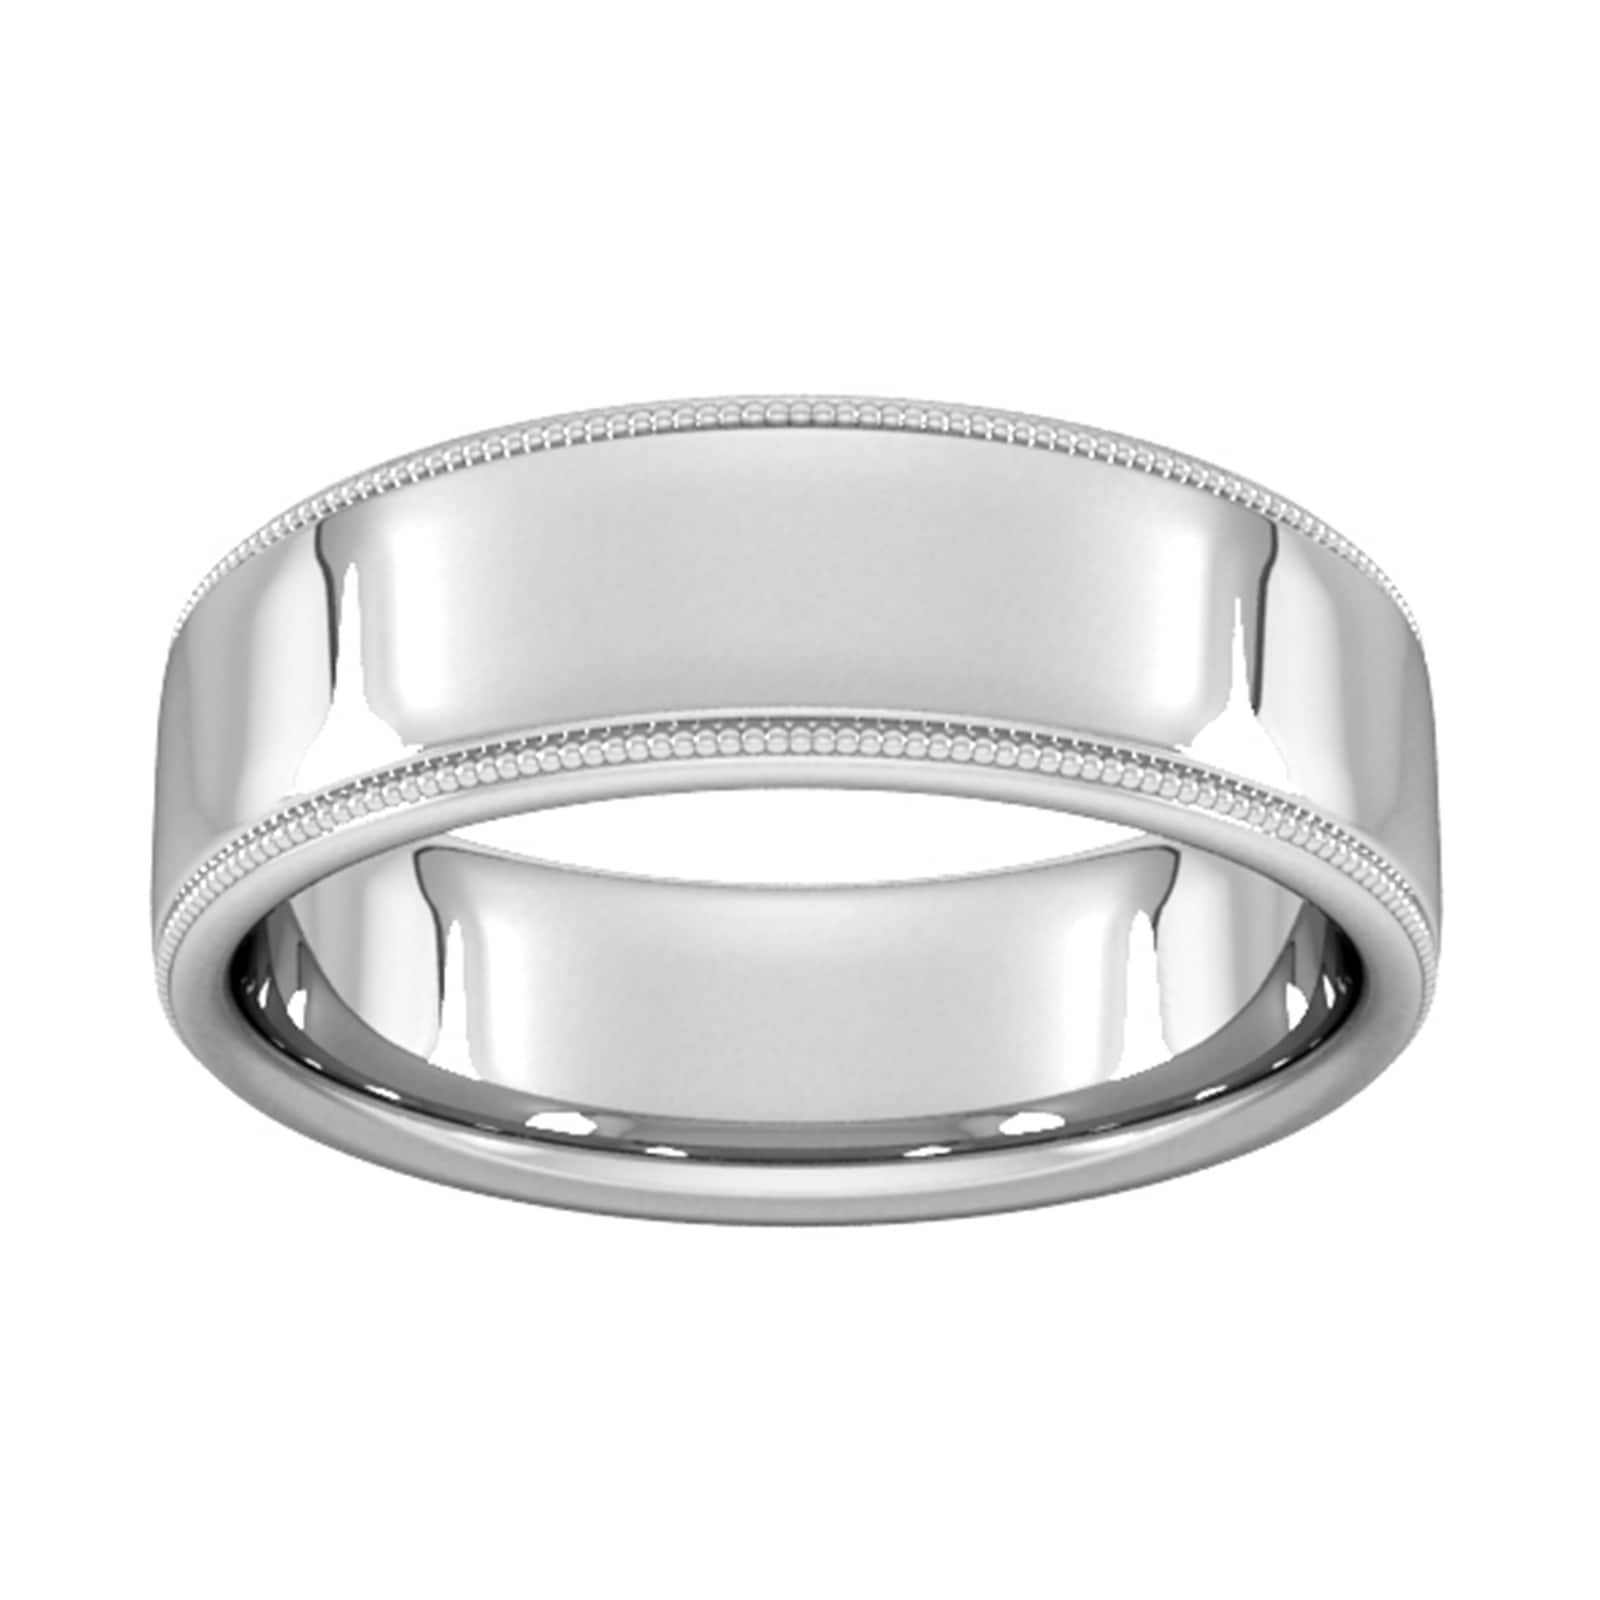 7mm Slight Court Standard Milgrain Edge Wedding Ring In 9 Carat White Gold - Ring Size H